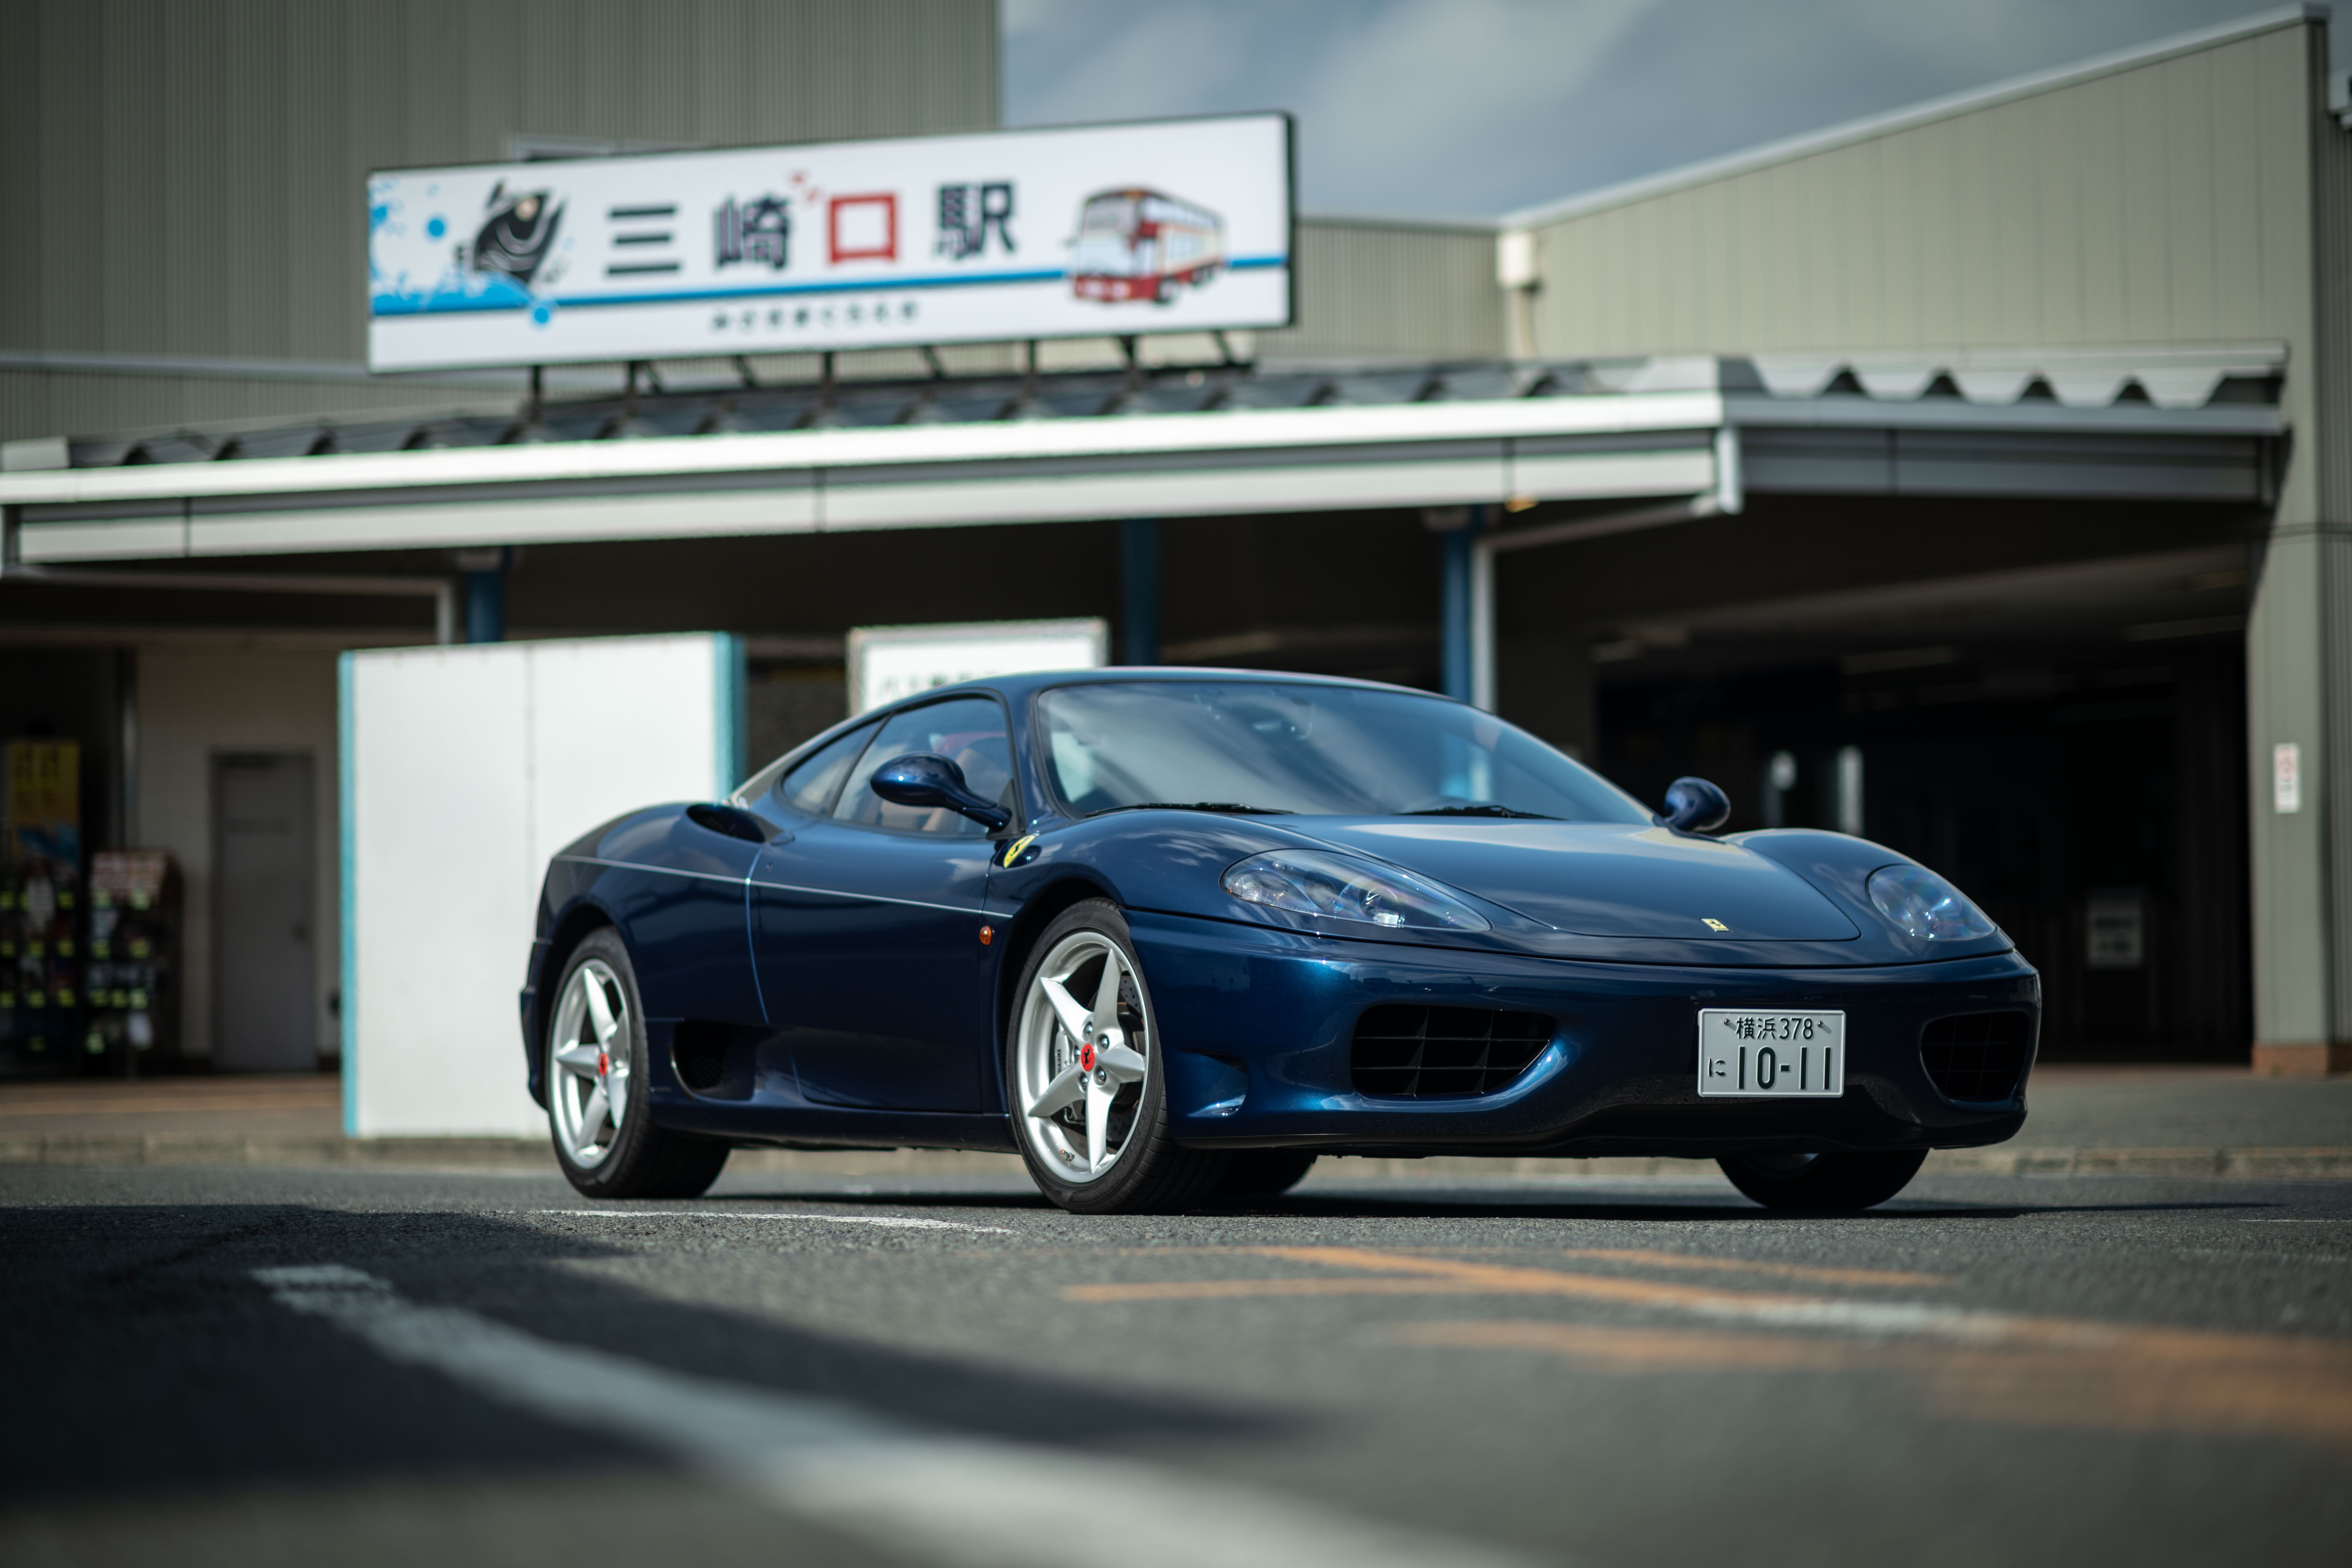 29歳 フェラーリを買う Vol 92 事故の続きと驚きの方向へ Gq Japan 自動車情報サイト 新車 中古車 Carview